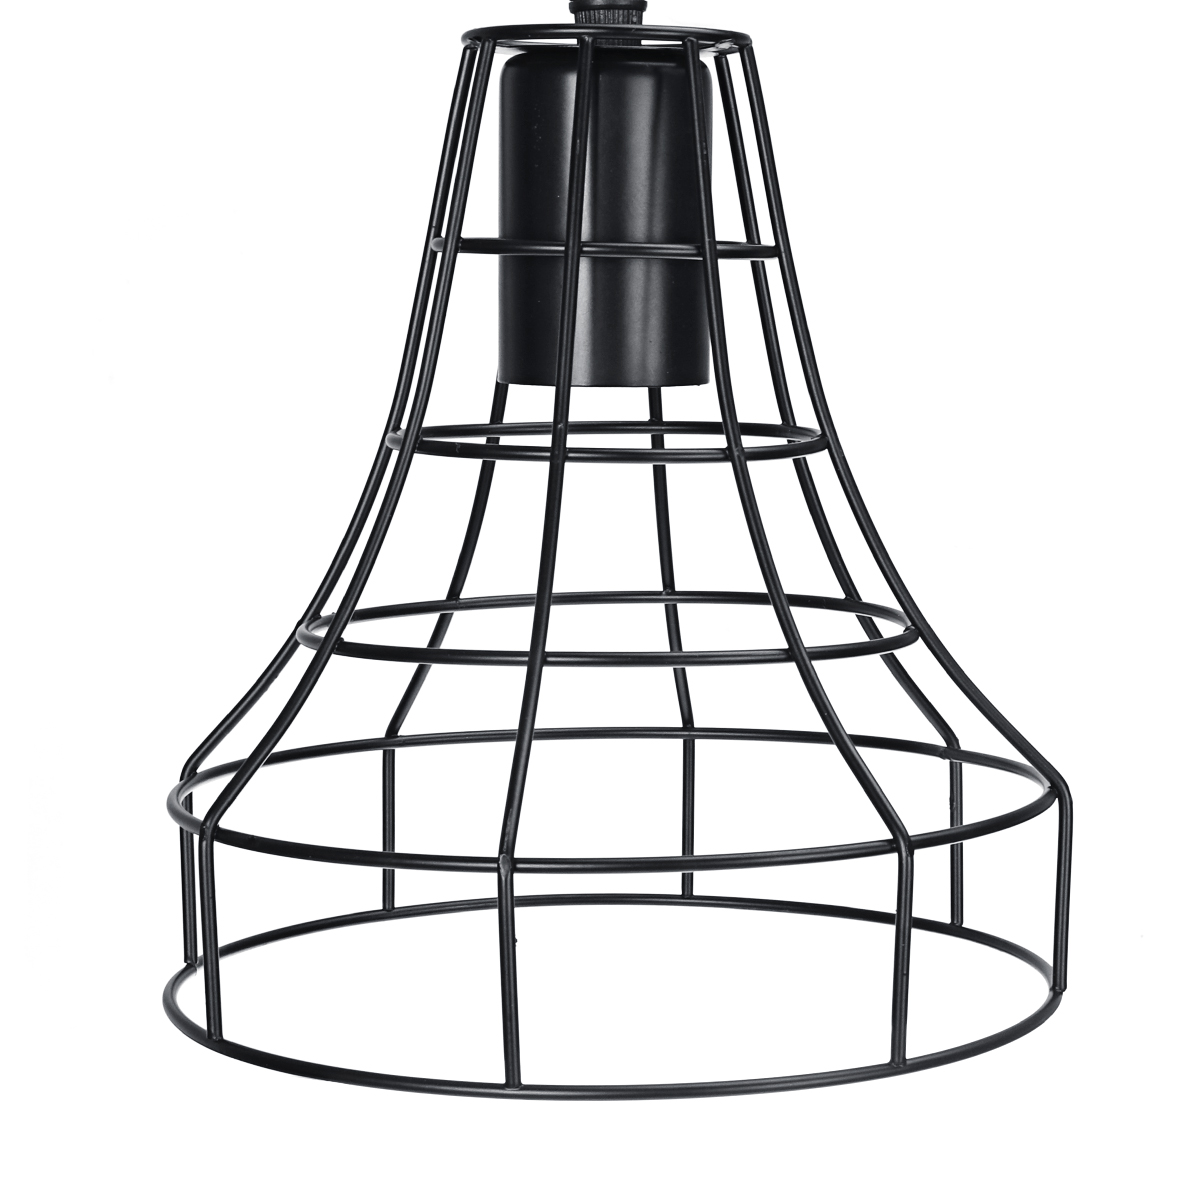 E27-Vintage-Retro-Pendant-Light-Ceiling-Lamp-Home-Dining-Fixture-Decoration-1697169-4